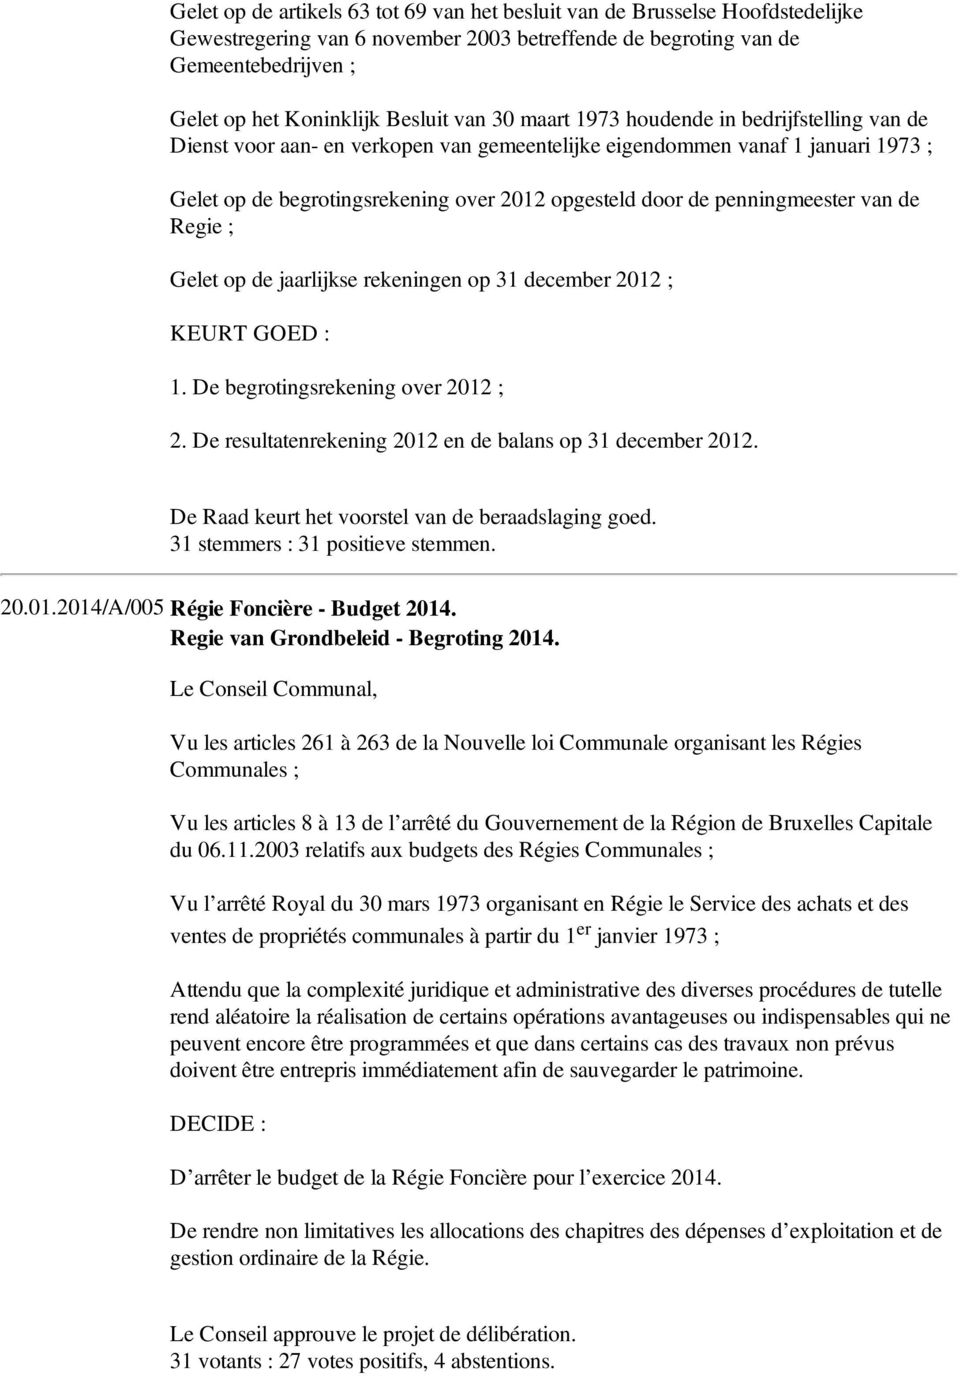 penningmeester van de Regie ; Gelet op de jaarlijkse rekeningen op 31 december 2012 ; KEURT GOED : 1. De begrotingsrekening over 2012 ; 2. De resultatenrekening 2012 en de balans op 31 december 2012.